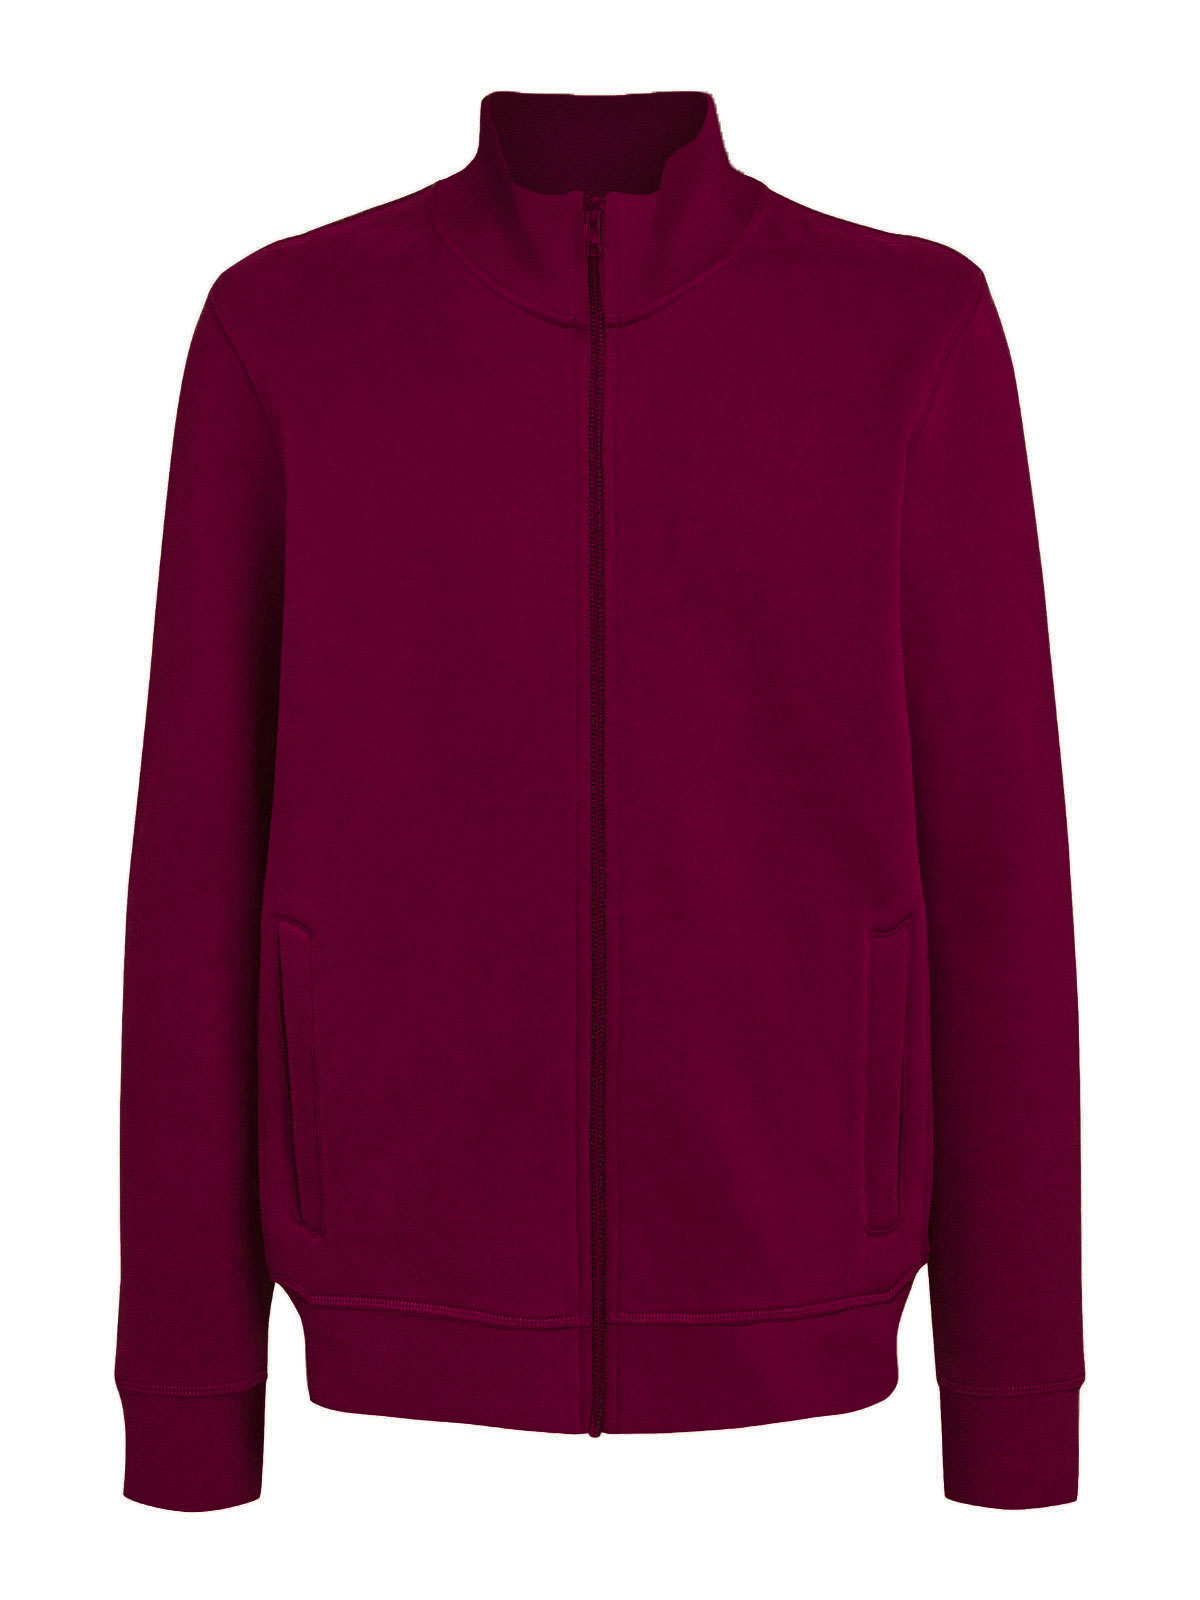 jacket-full-zip-burgundy.webp